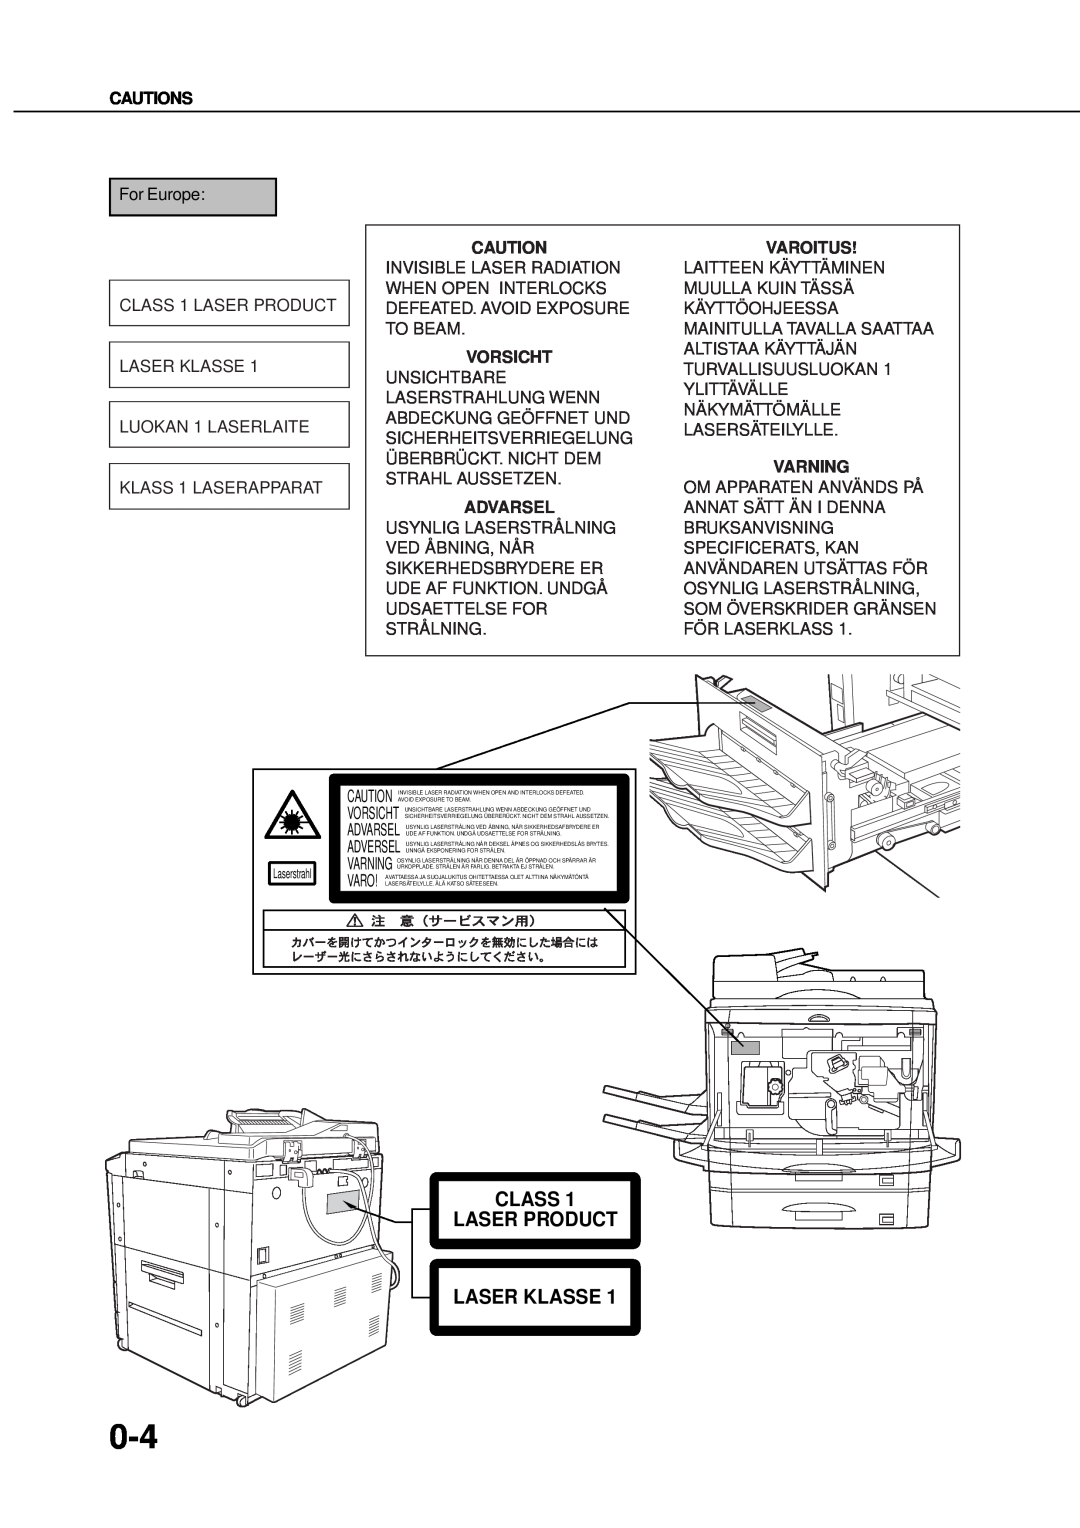 Sharp AR_M280, AR-350 operation manual Class Laser Product Laser Klasse, Cautions, Varoitus, Vorsicht, Varning, Advarsel 